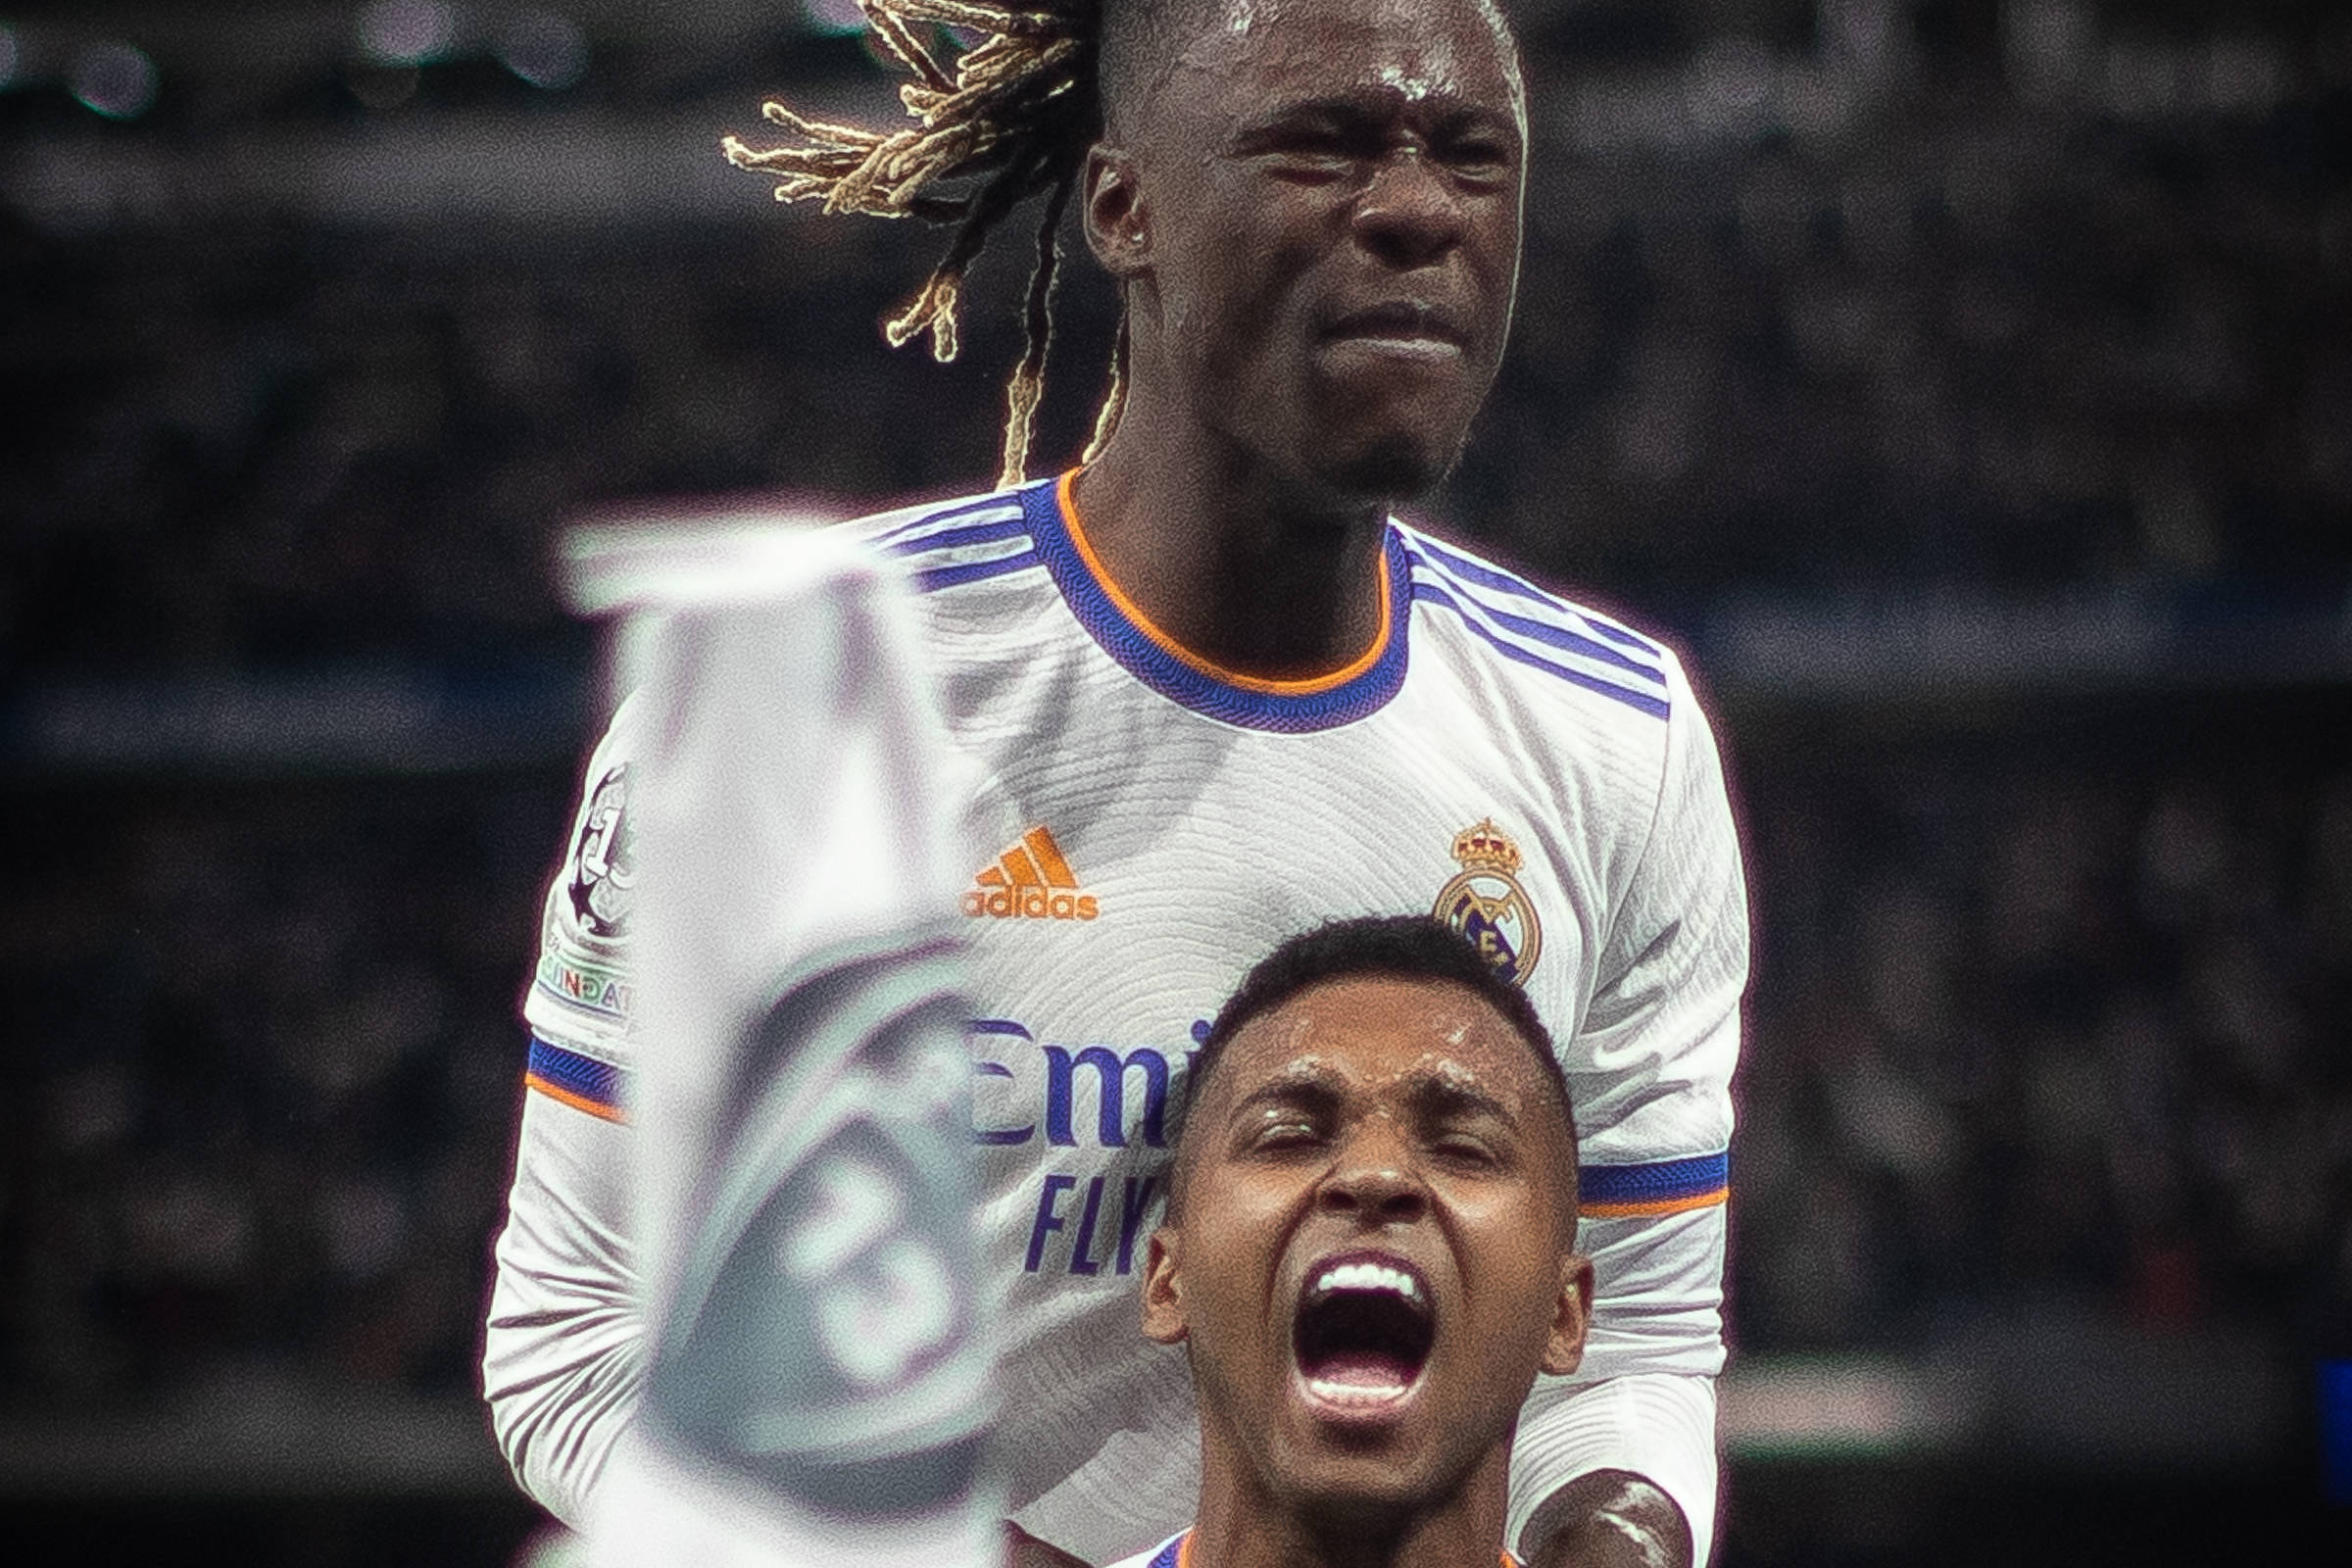 Camavinga deixa treino e é dúvida para jogo do Real Madrid na Champions  League